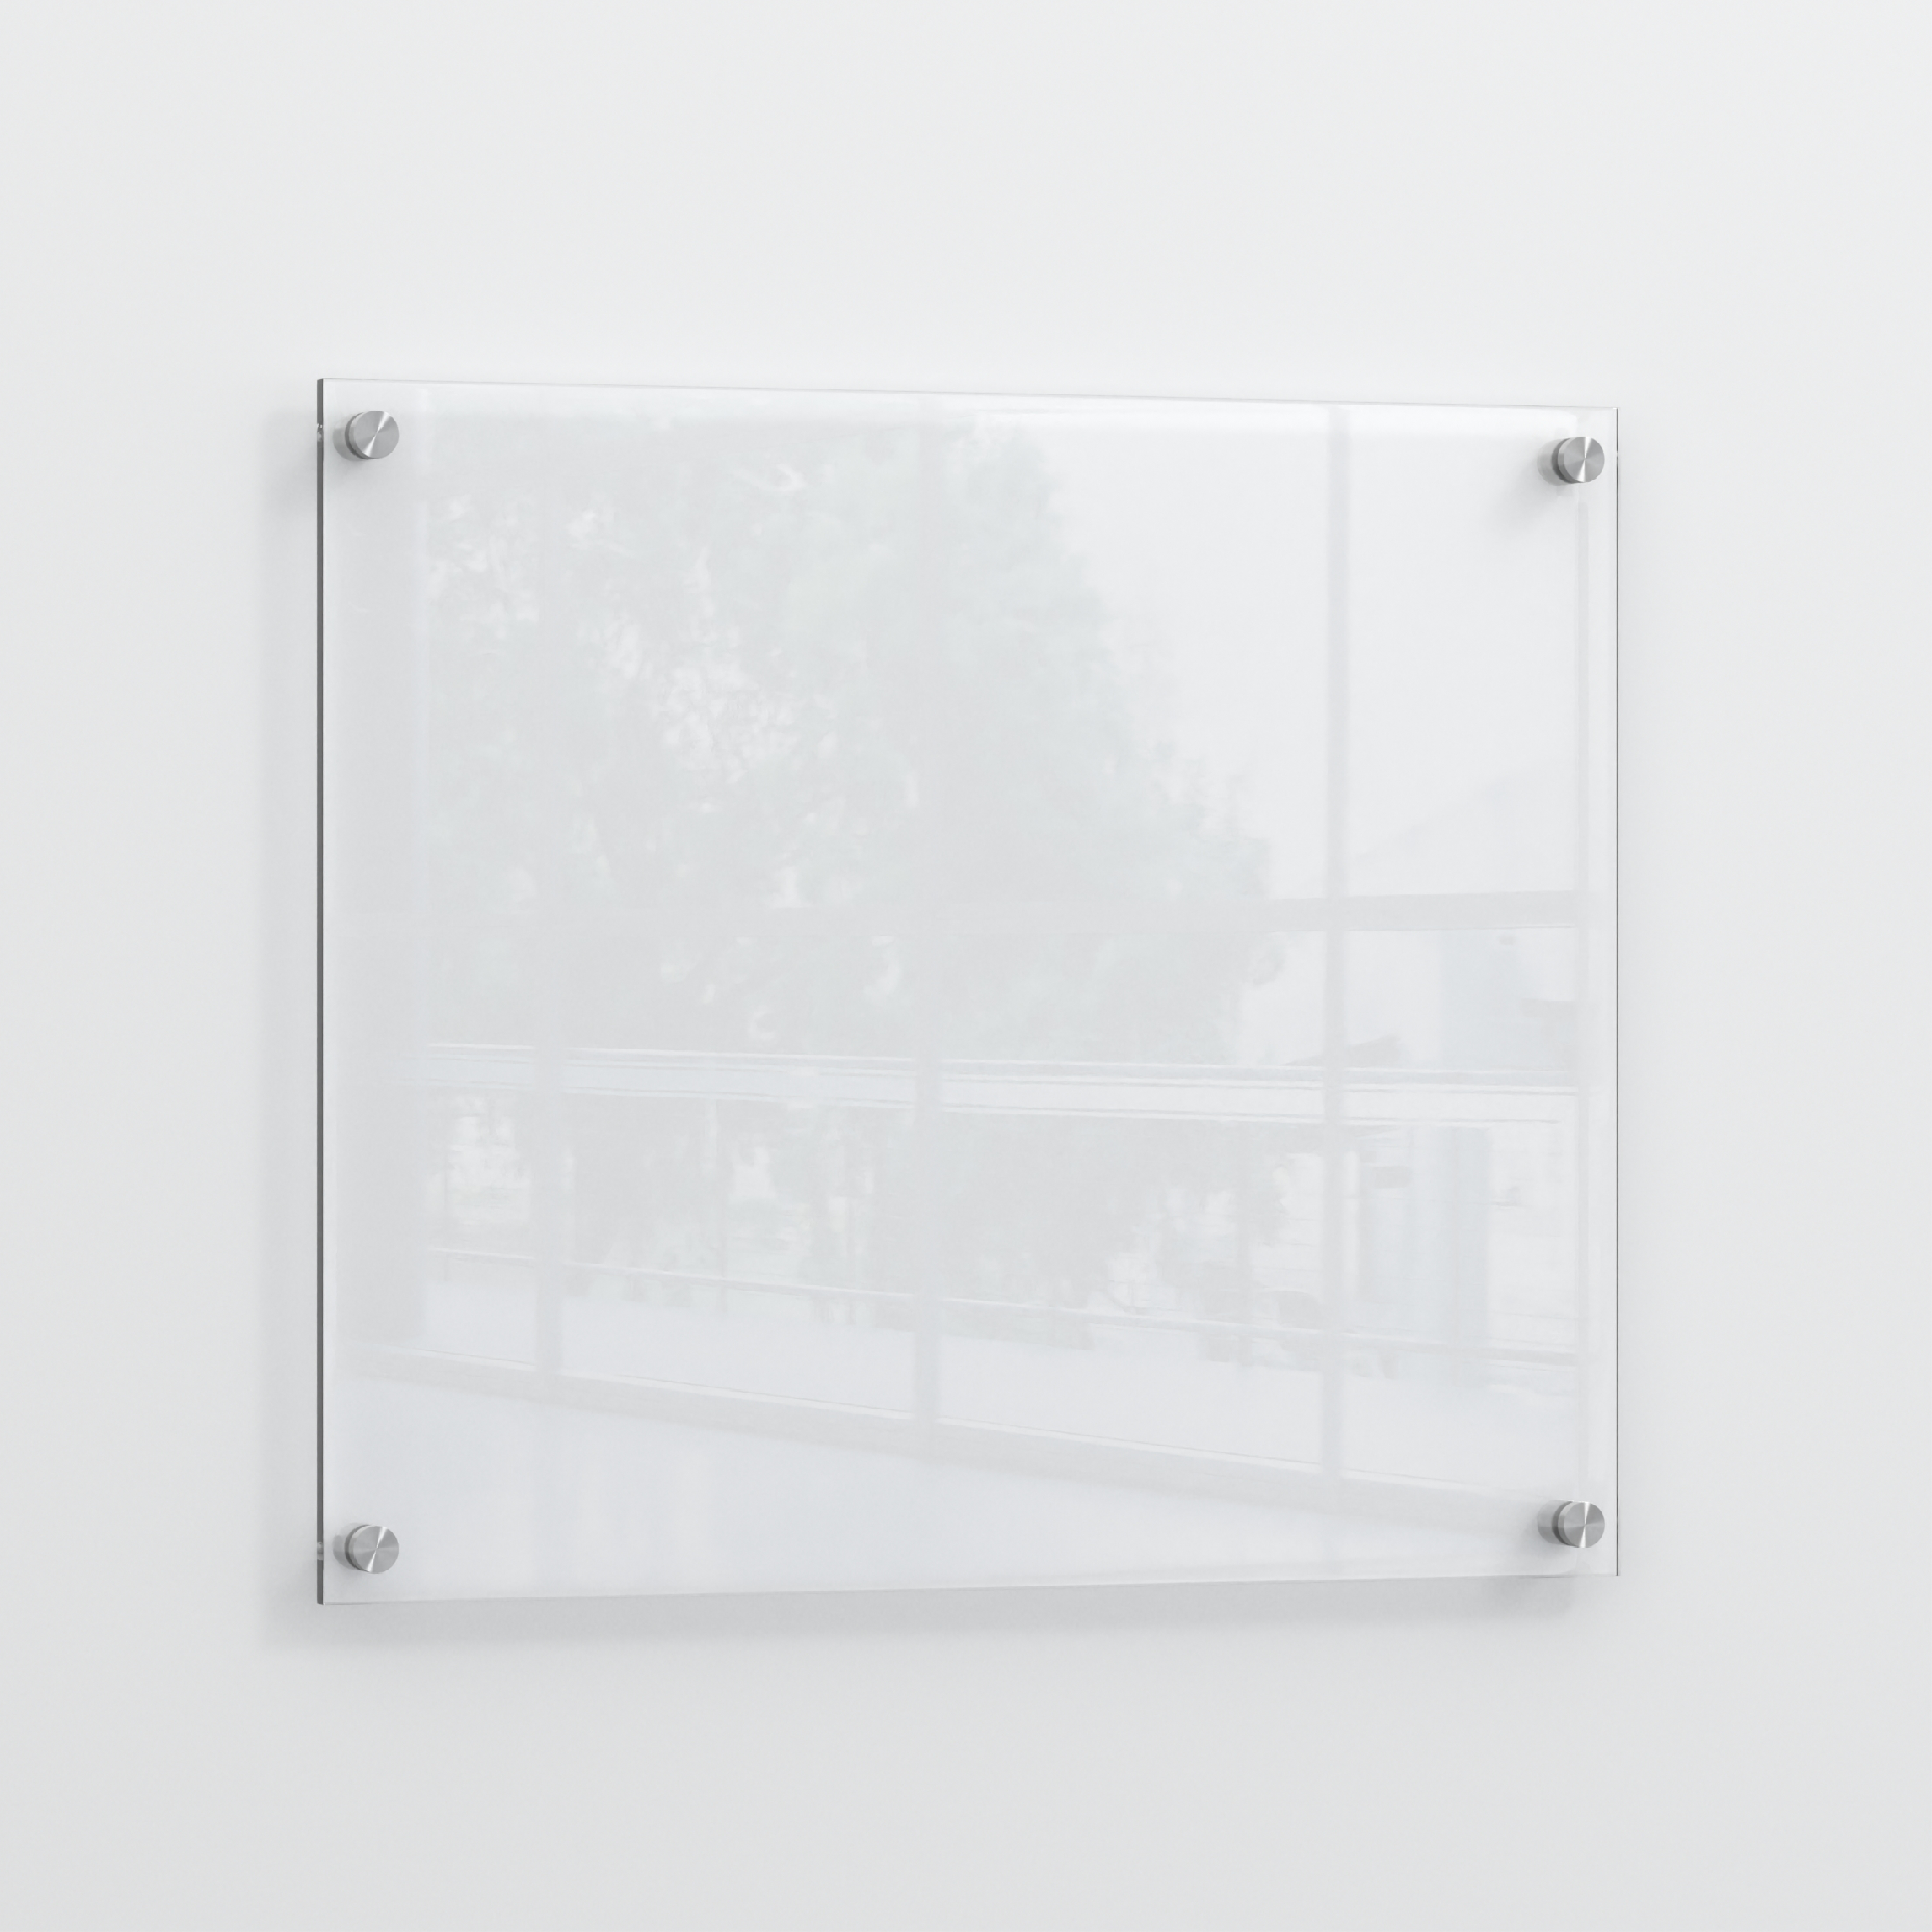 Plaque de porte personnalisable en plexi transparent 100 x 100mm